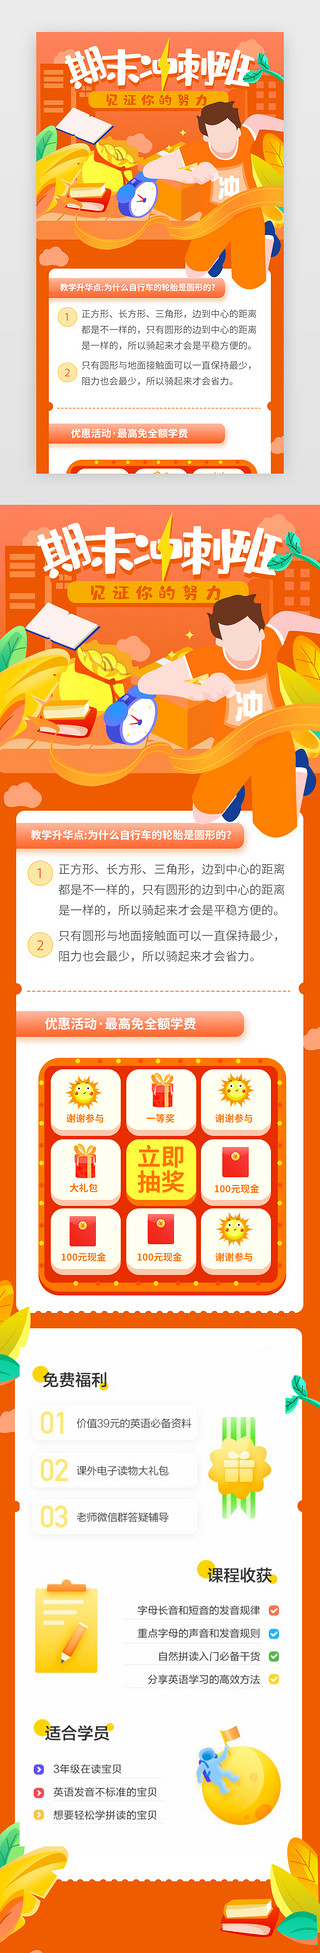 活动宣传单UI设计素材_橙色课程补习班教育活动h5长图